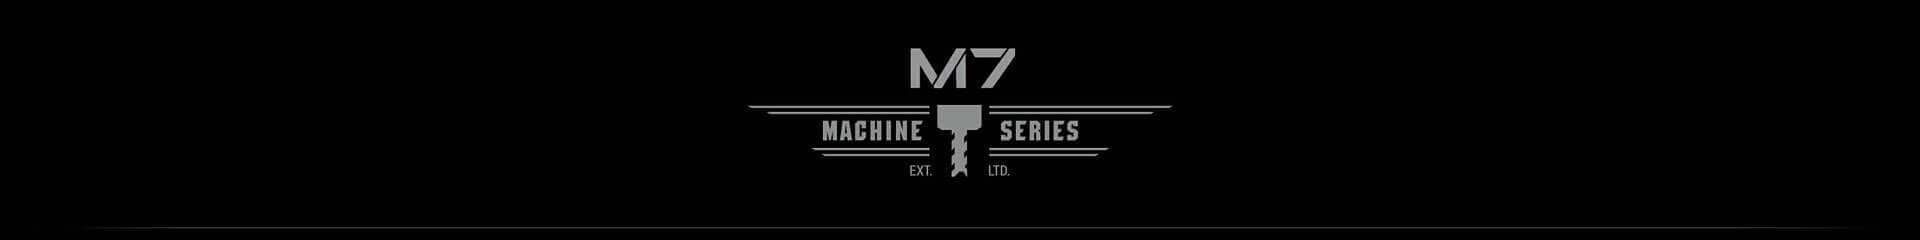 M7 Machine Series